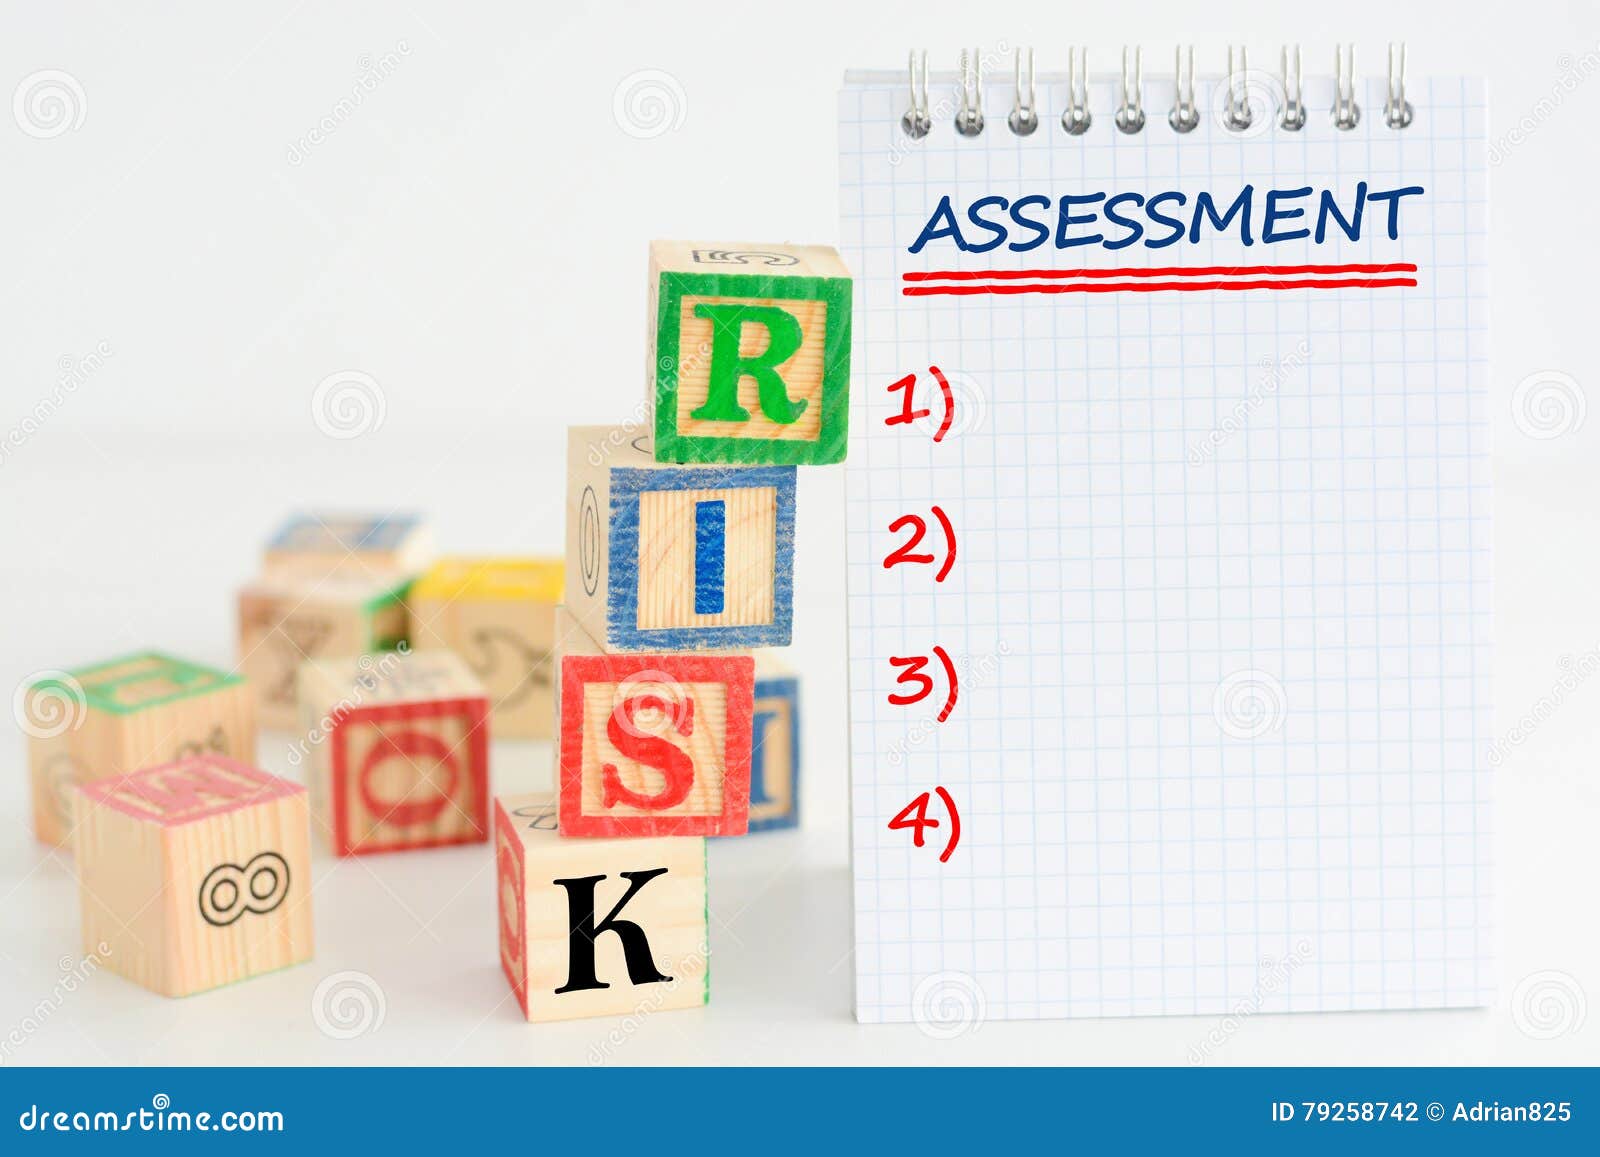 risk assessment or management plan